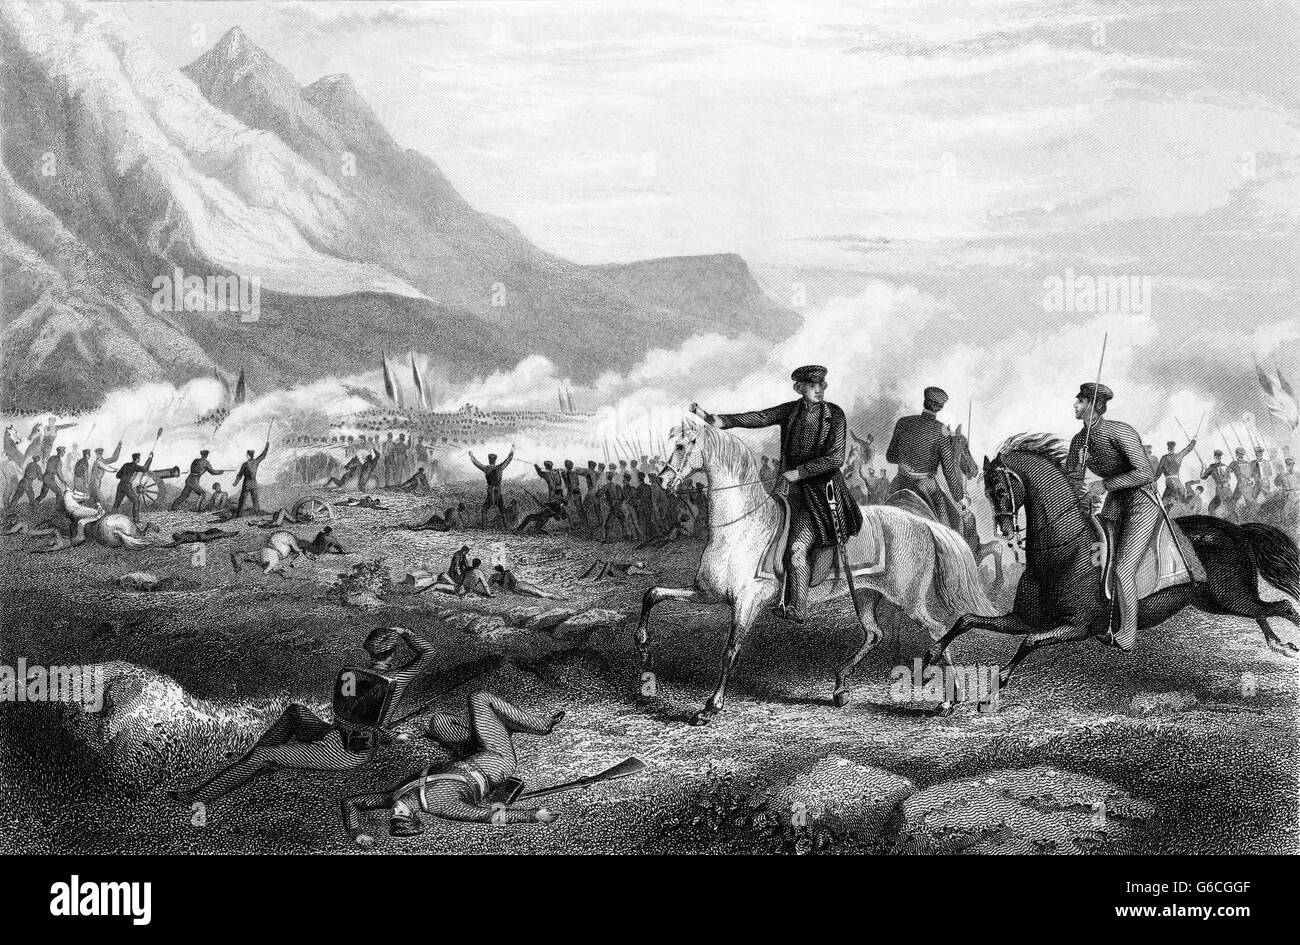 1840ER JAHRE FEBRUAR 1847 GENERAL ZACHARY TAYLOR REGIE TRUPPE SCHLACHT VON BUENA VISTA WÄHREND MEXIKO-AMERIKANISCHER KRIEG Stockfoto